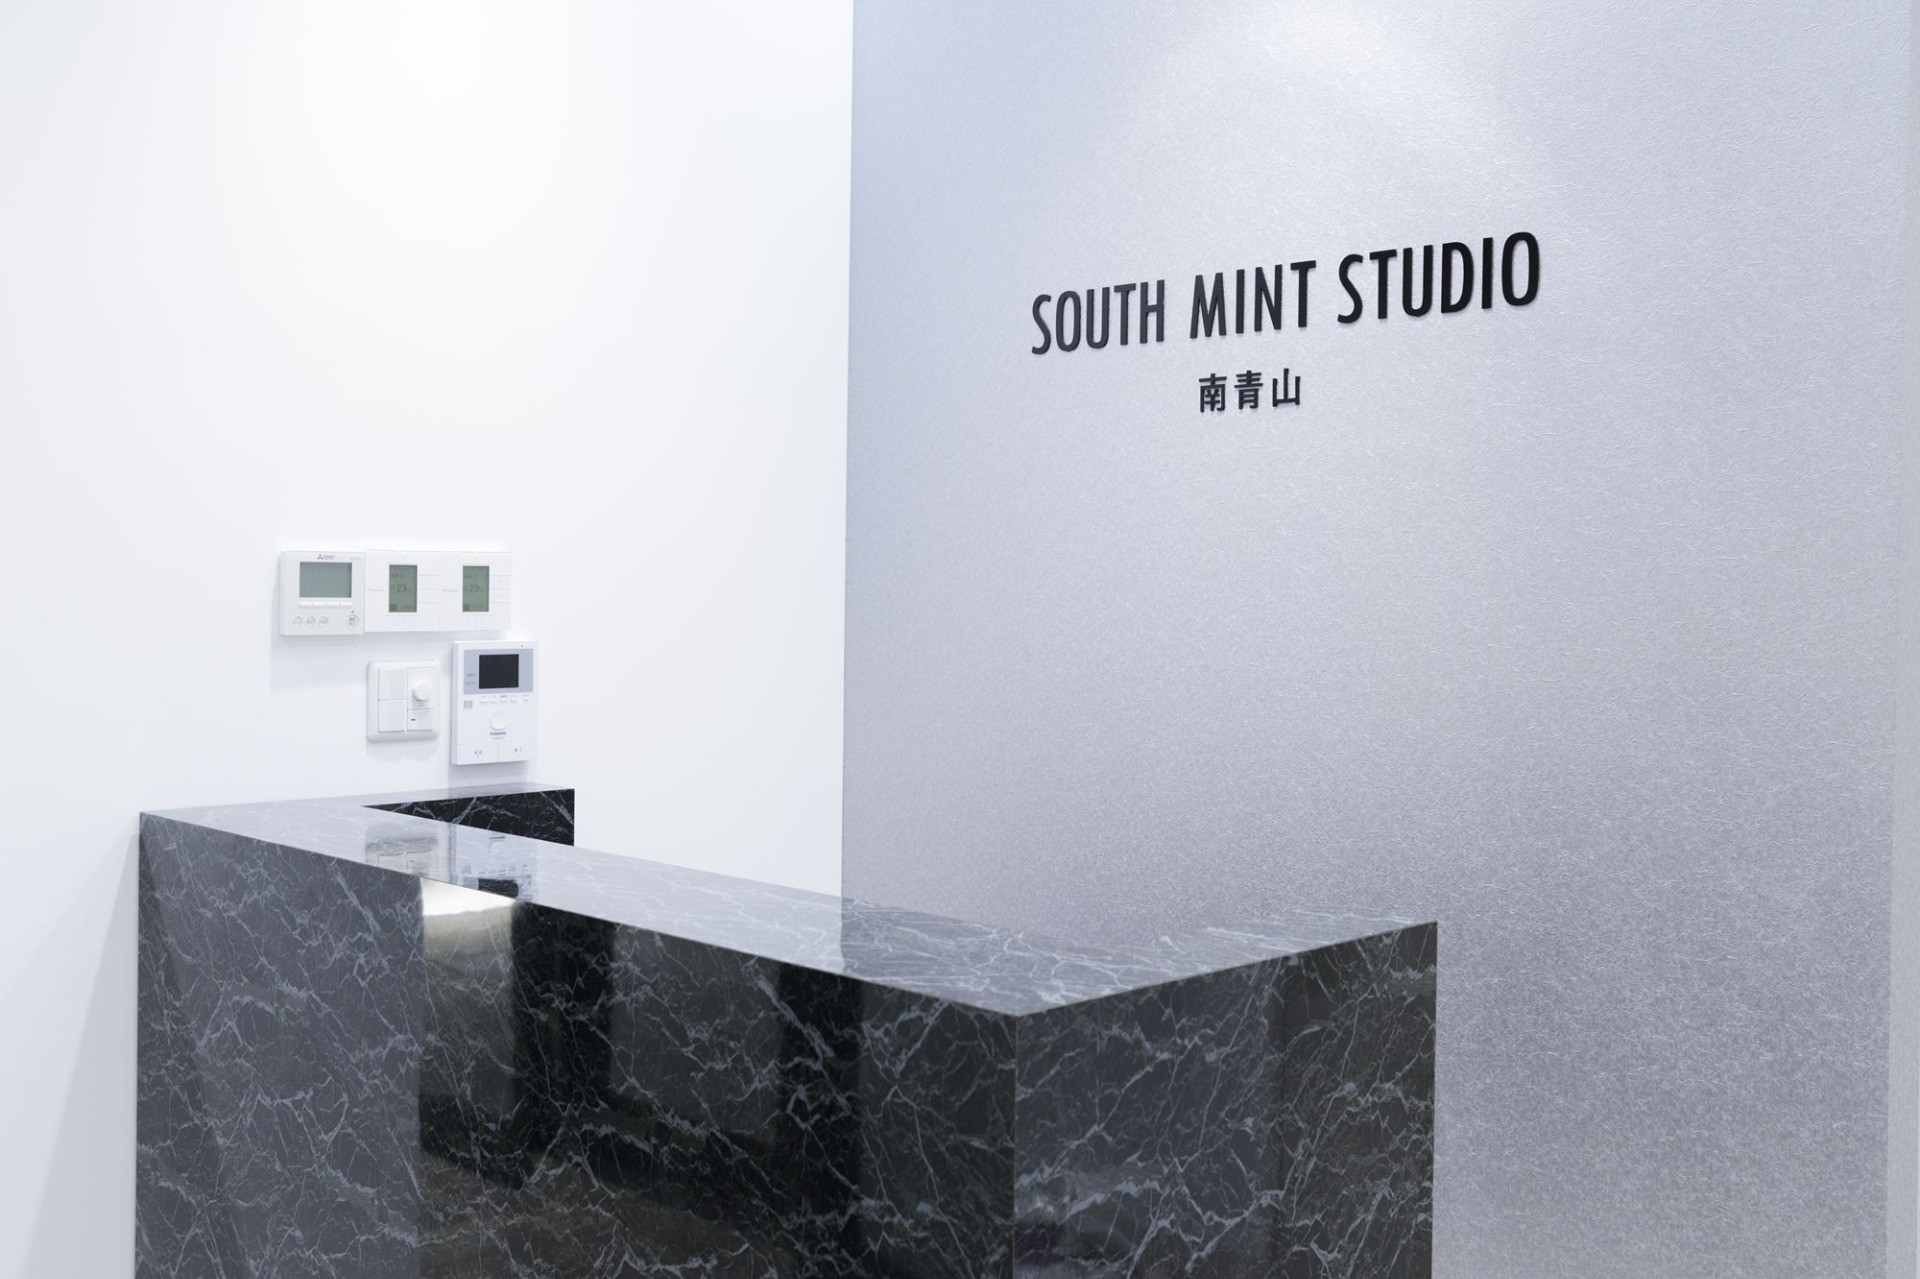 SOUTH MINT STUDIO 南青山